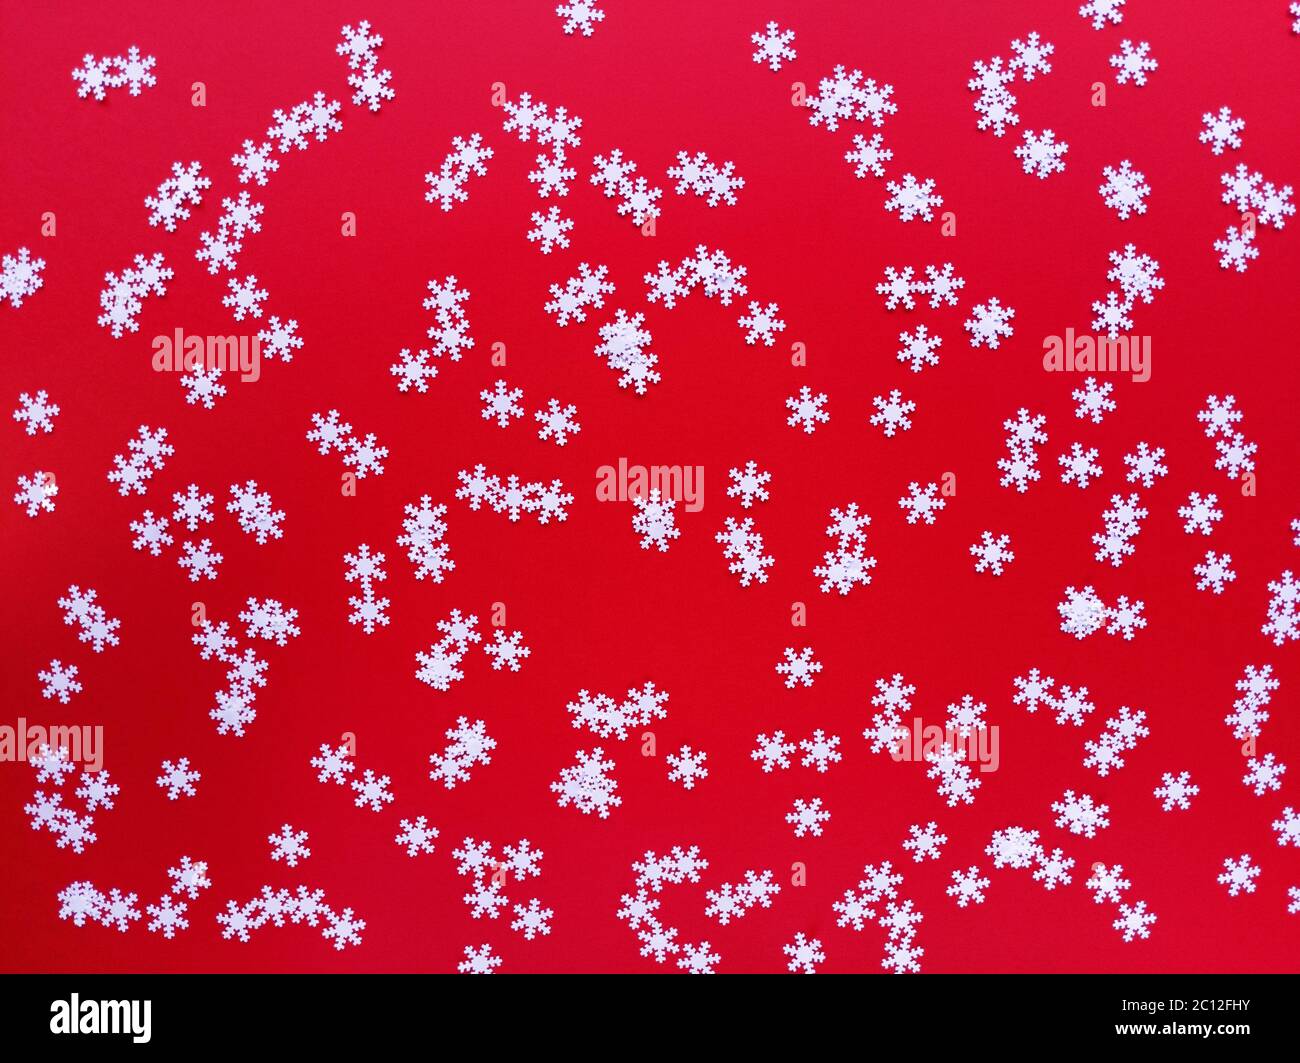 Verstreute weiße Schneeflocken auf rotem Hintergrund. Einfache festliche flache Laie. Stock Foto. Stockfoto